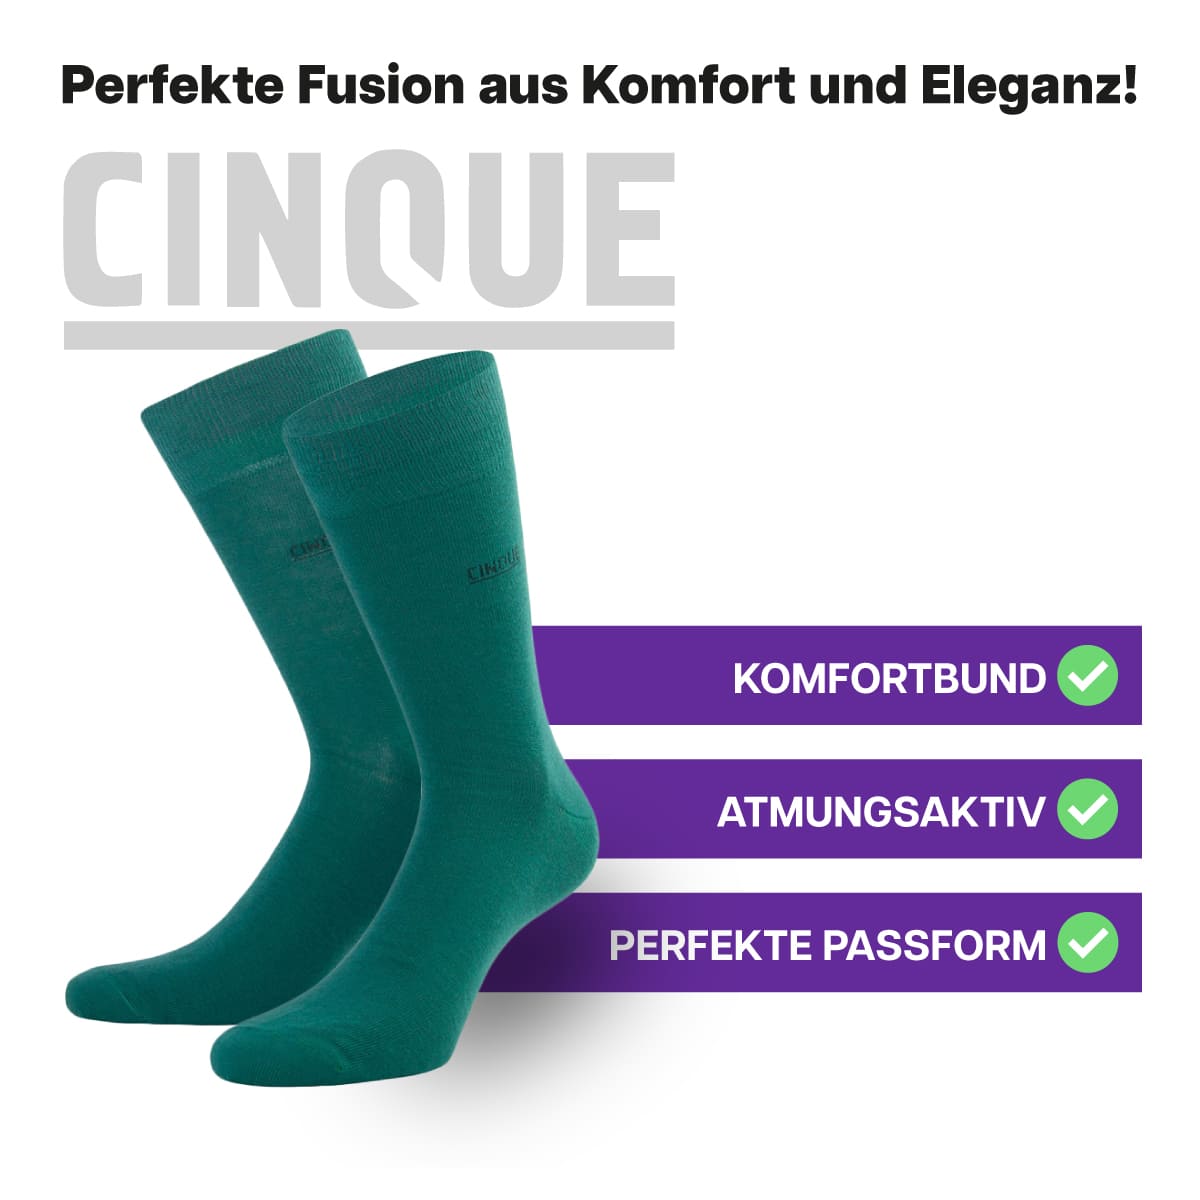 Herausragende, atmungsaktive Business Socken von CINQUE designed by PATRON SOCKS mit Komfortbund. Perfekte Passform!